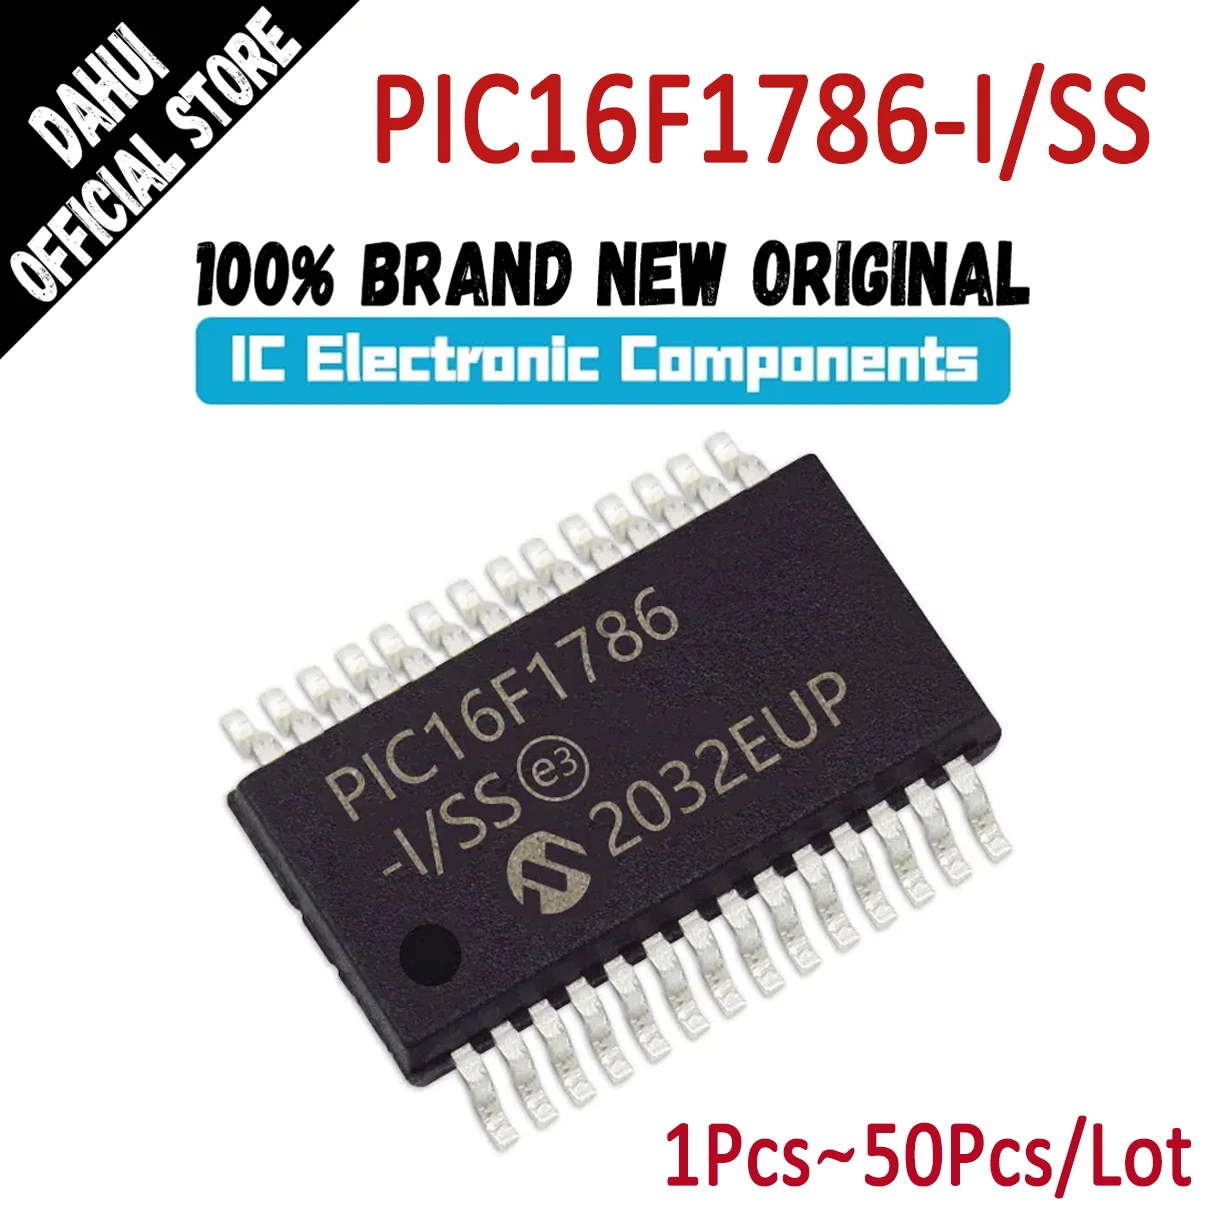 

PIC16F1786-I/SS PIC16F1786-ISS PIC16F1786-I PIC16F1786 PIC16F PIC16 PIC16 PIC IC MCU чип SSOP-28 На складе 100% новый оригинал